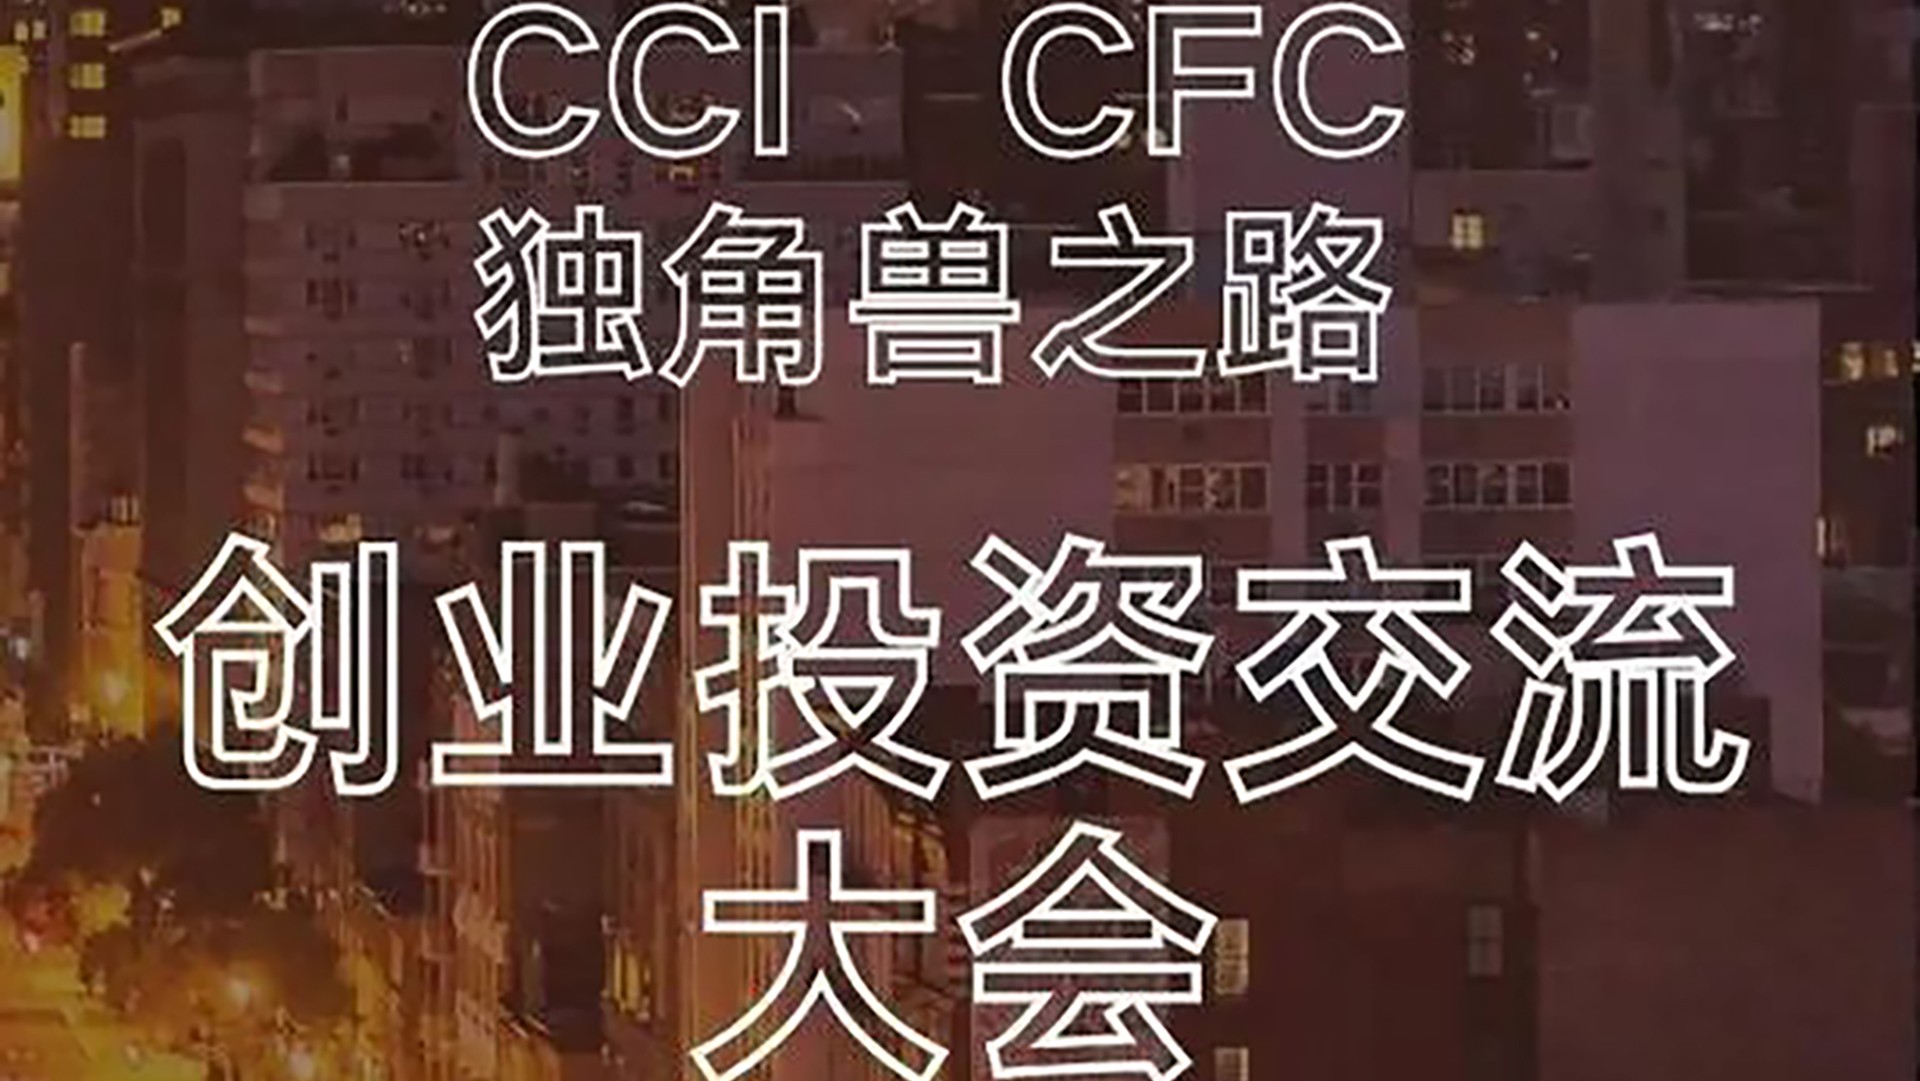 CCI x CFC Premium Roadshow Symposium